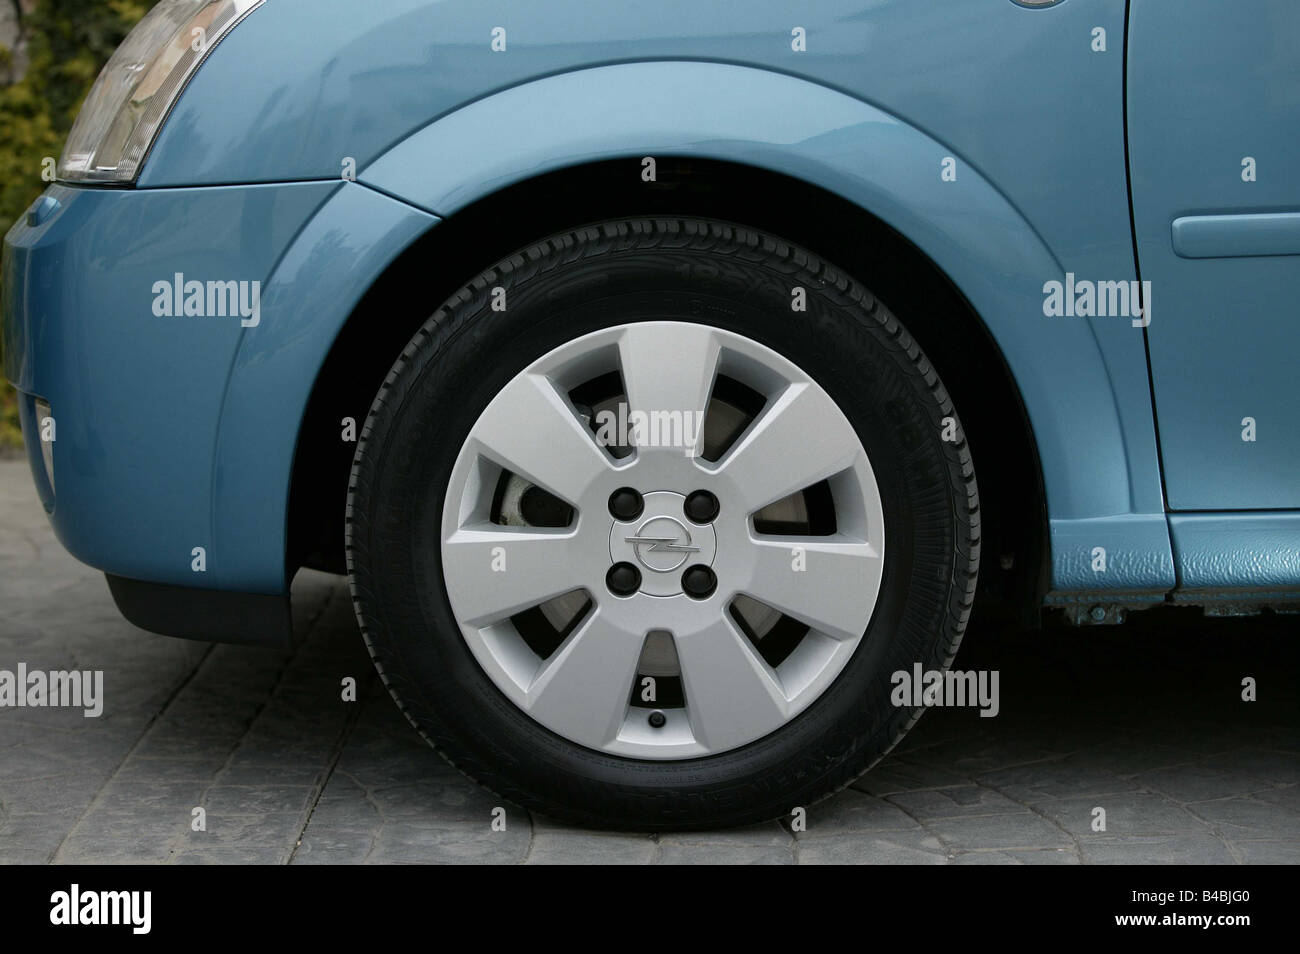 Coche, Opel Meriva, Van, limusina, modelo del año 2003-, azul metálico,  vista detallada, los neumáticos, Ruedas, neumáticos delanteros, rueda  delantera, t Fotografía de stock - Alamy